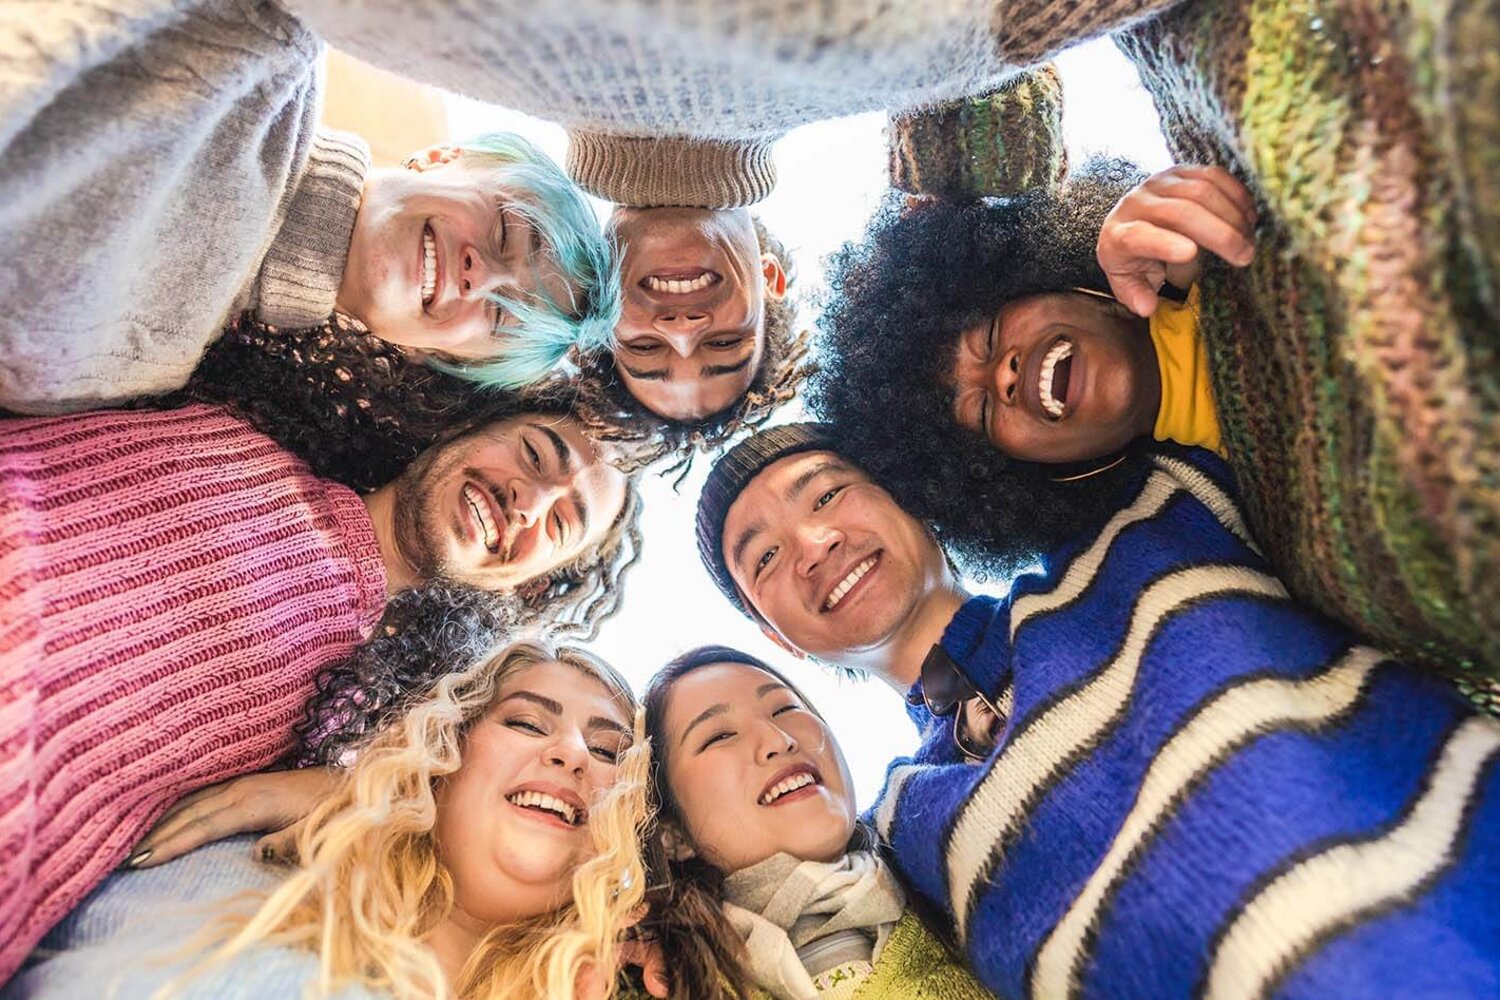 Eine bunte Gruppe junger Freunde umarmt sich fröhlich im Kreis, alle lächeln in die Kamera. Multiethnische Gruppe von Freunden, die gemeinsam Spaß haben.